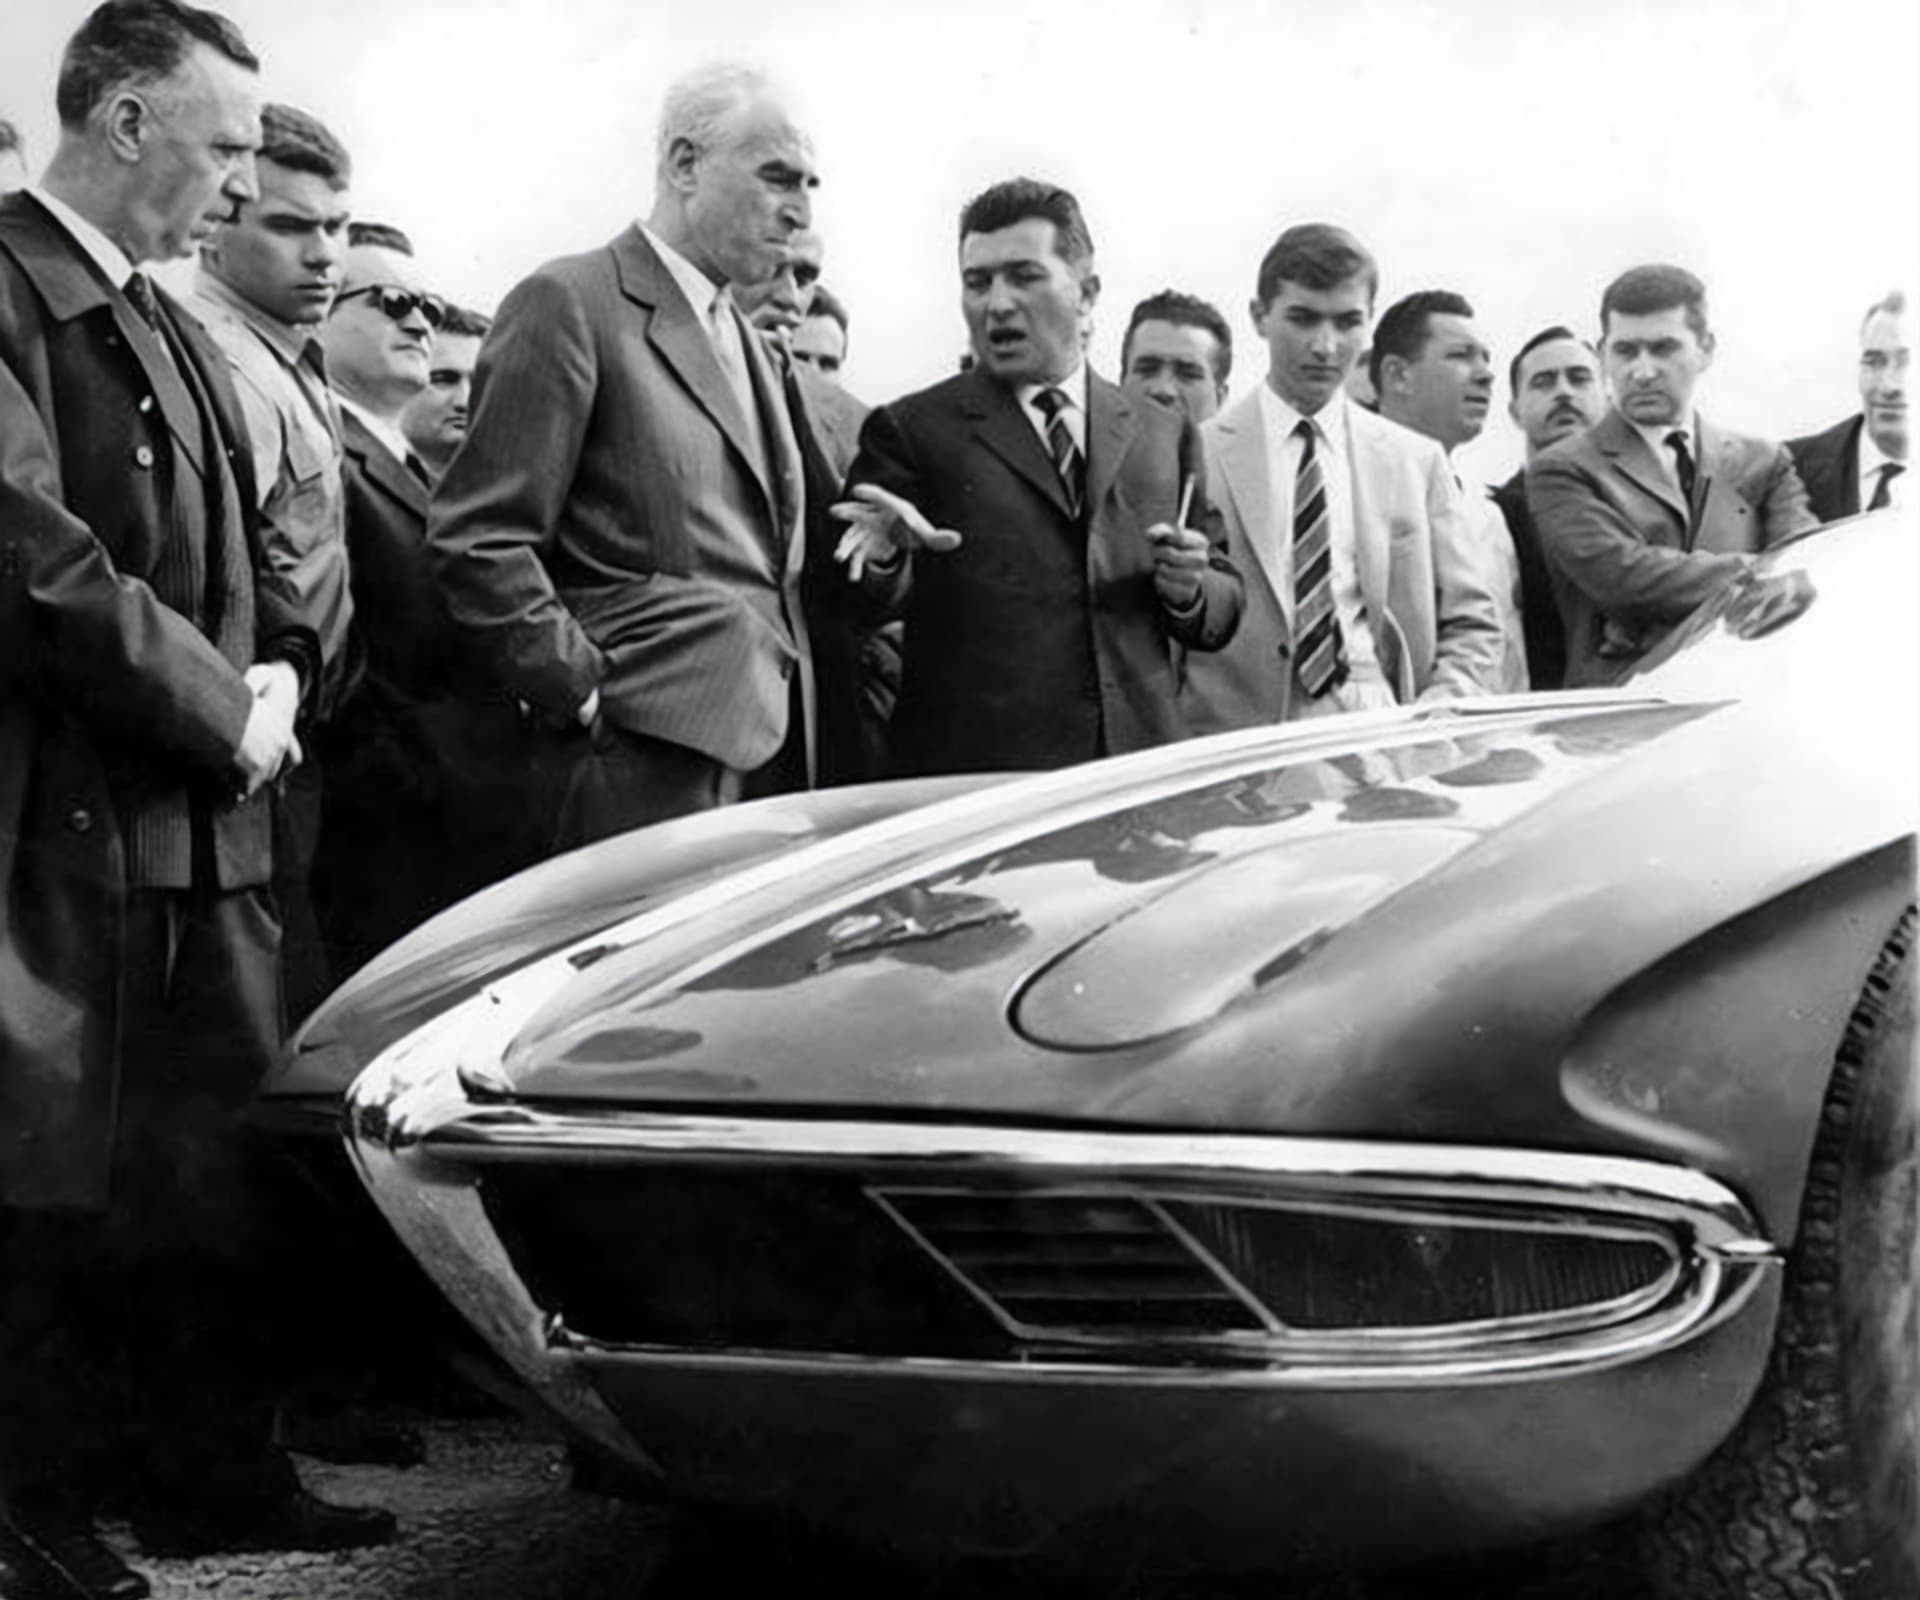 Prvním sériovým vozem z produkce automobilky se stalo v roce 1963 Lamborghini 350 GTV, na snímku představuje Ferruccio Lamborghini tento model novinářům.